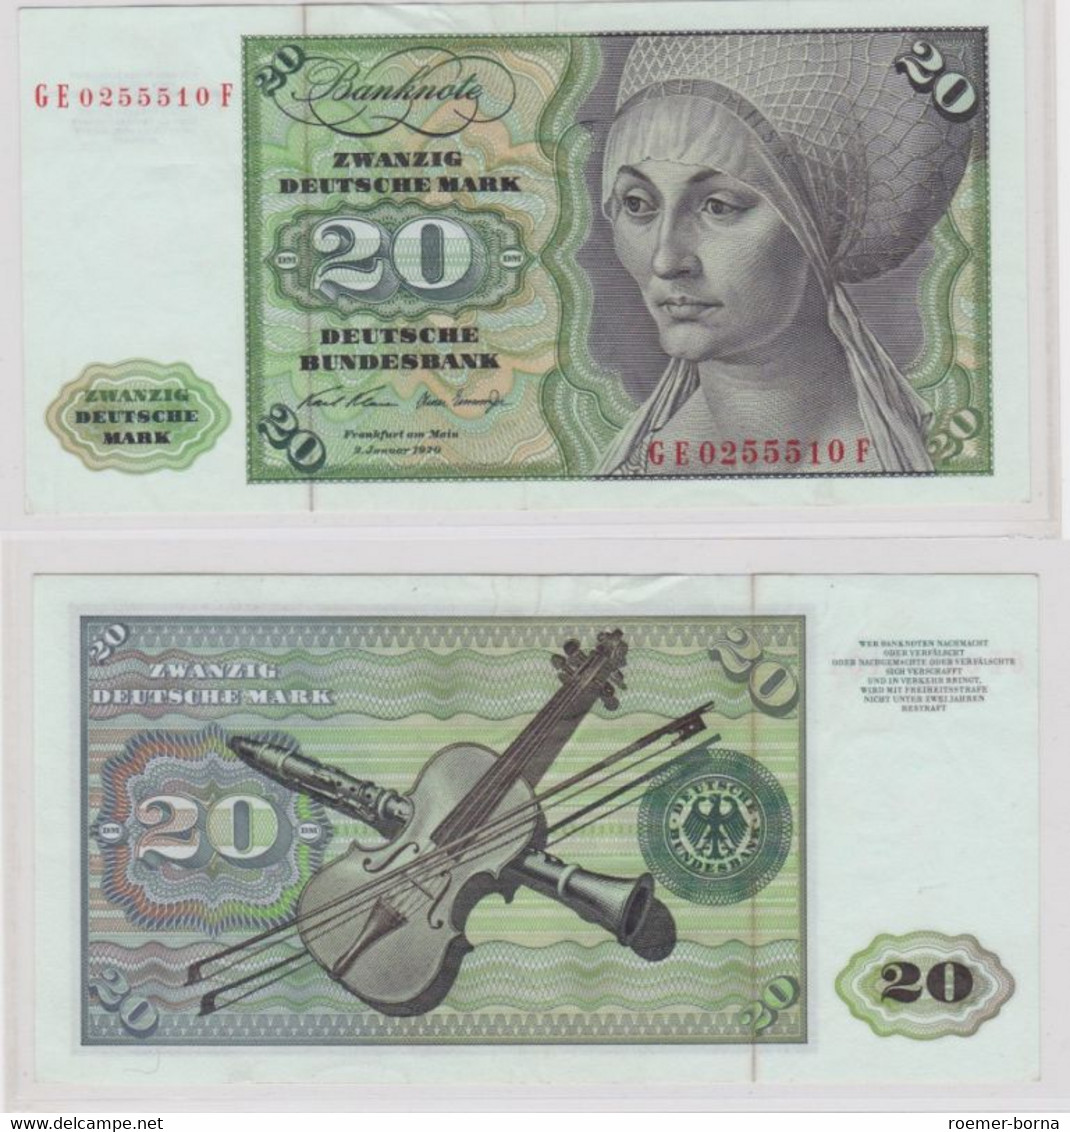 T145379 Banknote 20 DM Deutsche Mark Ro. 271b Schein 2.Jan. 1970 KN GE 0255510 F - 20 DM